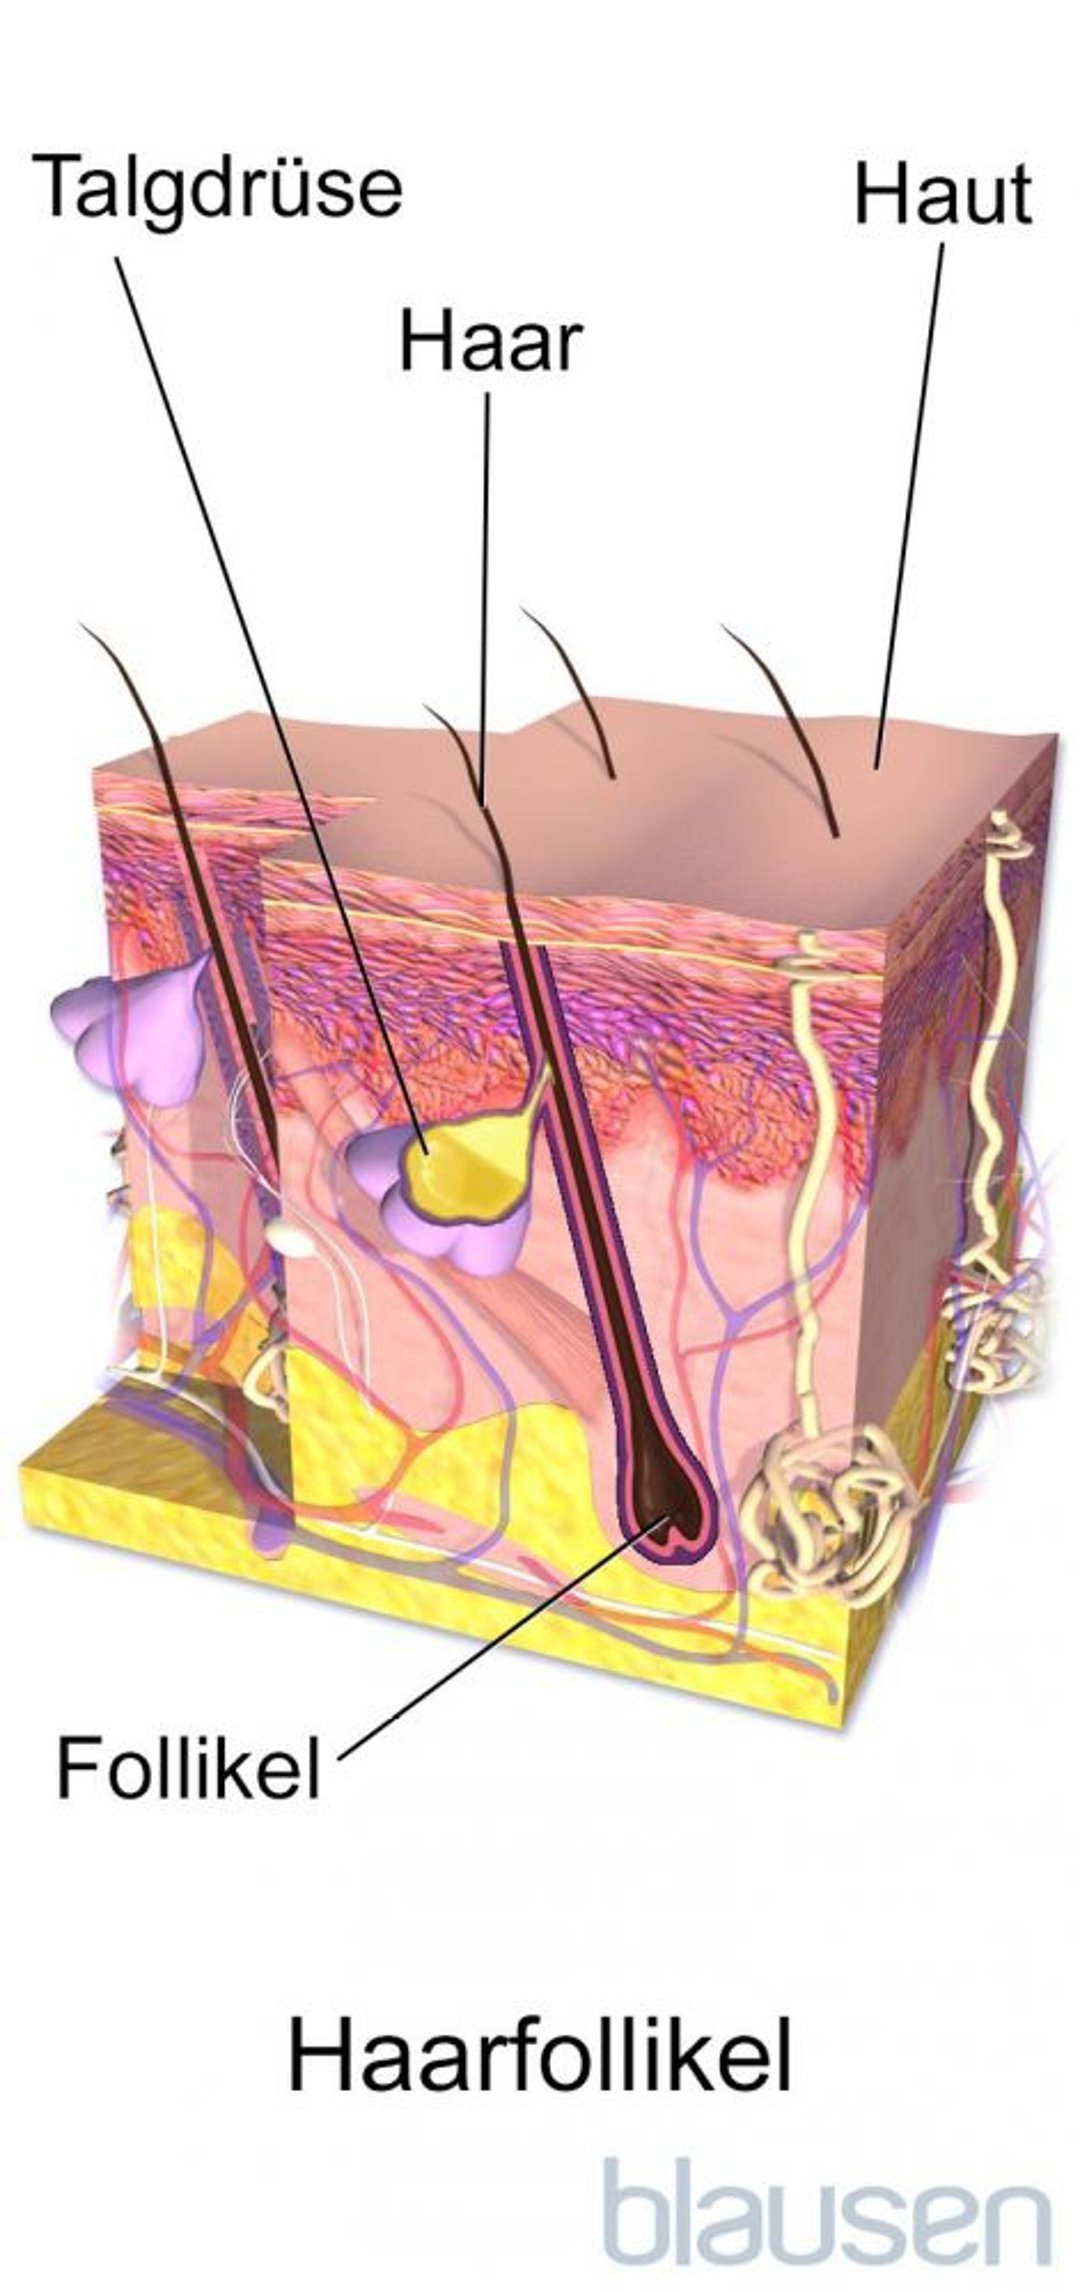 Anatomie eines Haarfollikels